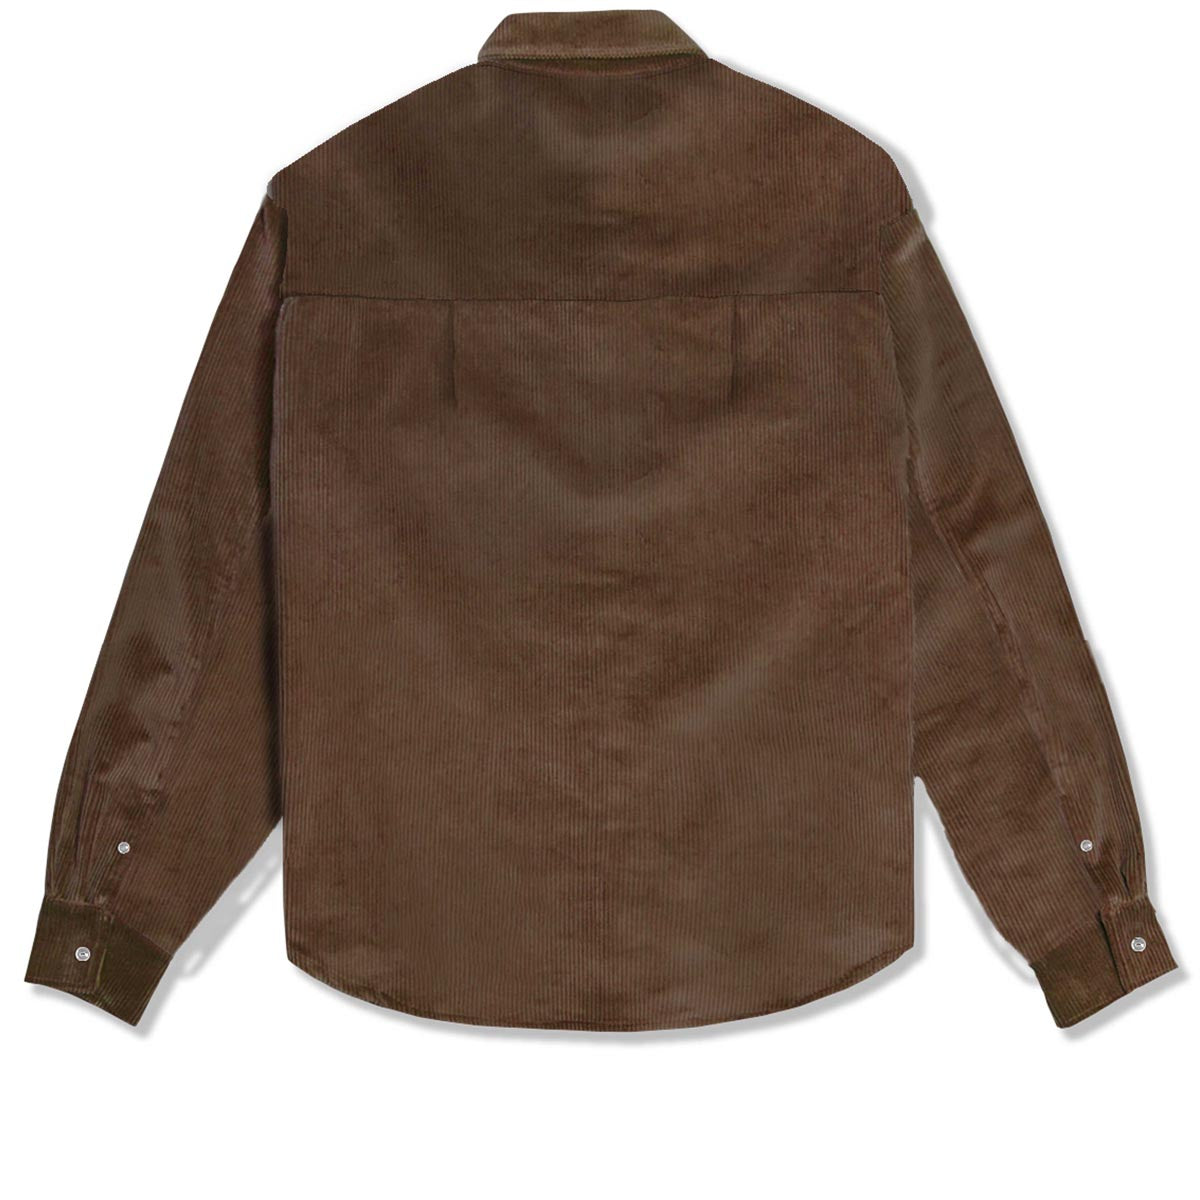 Primitive De Soto Woven Jacket - Brown image 3